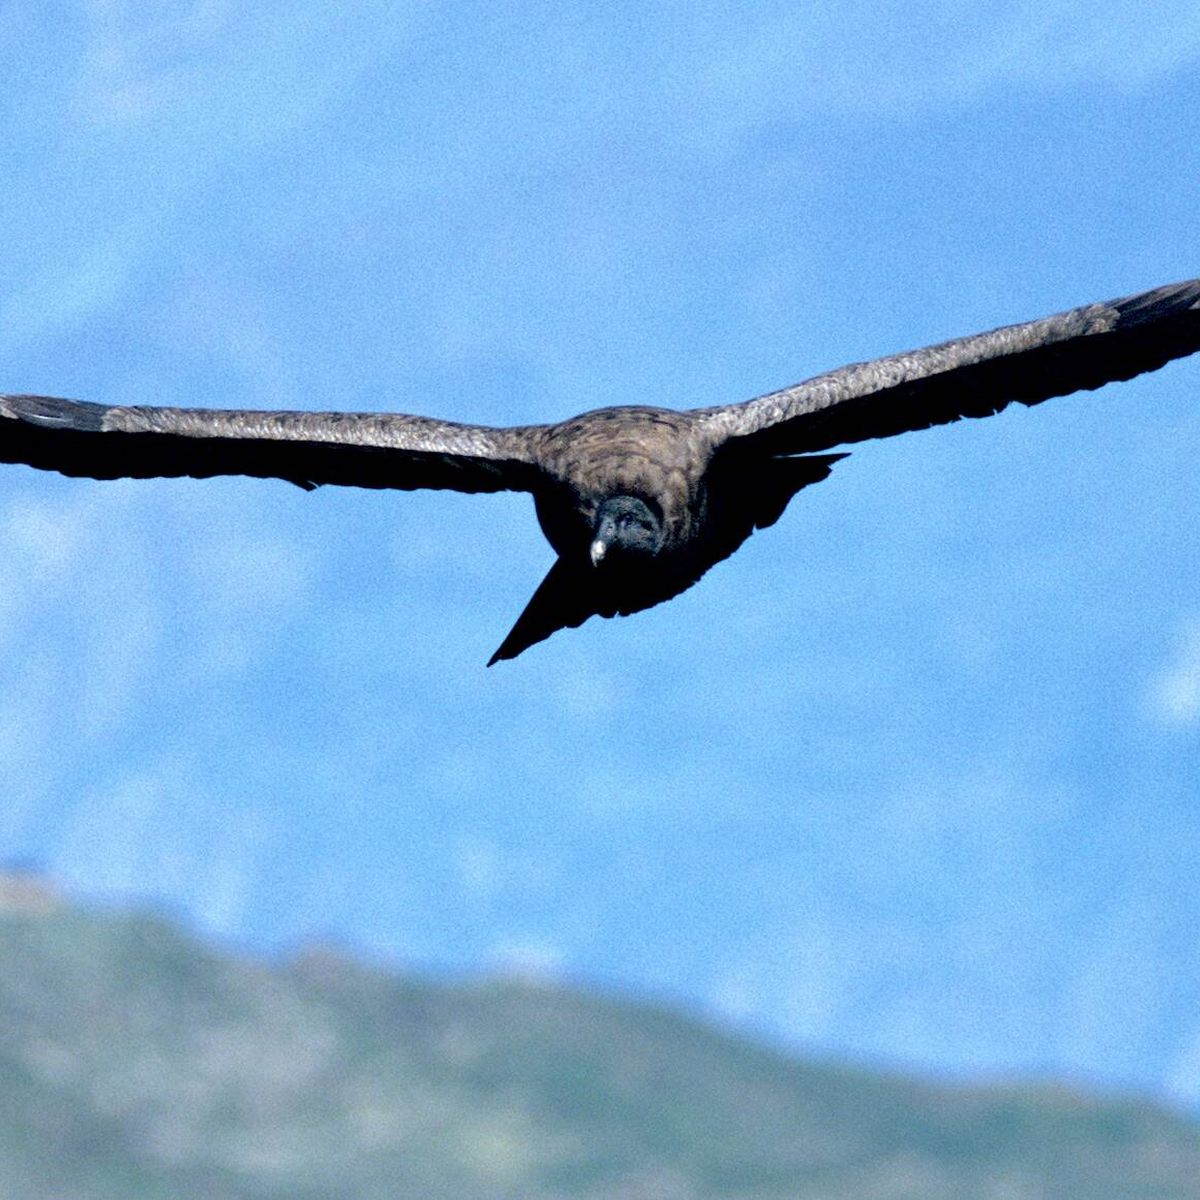 El gigantesco cóndor andino: una de las mayores aves del planeta